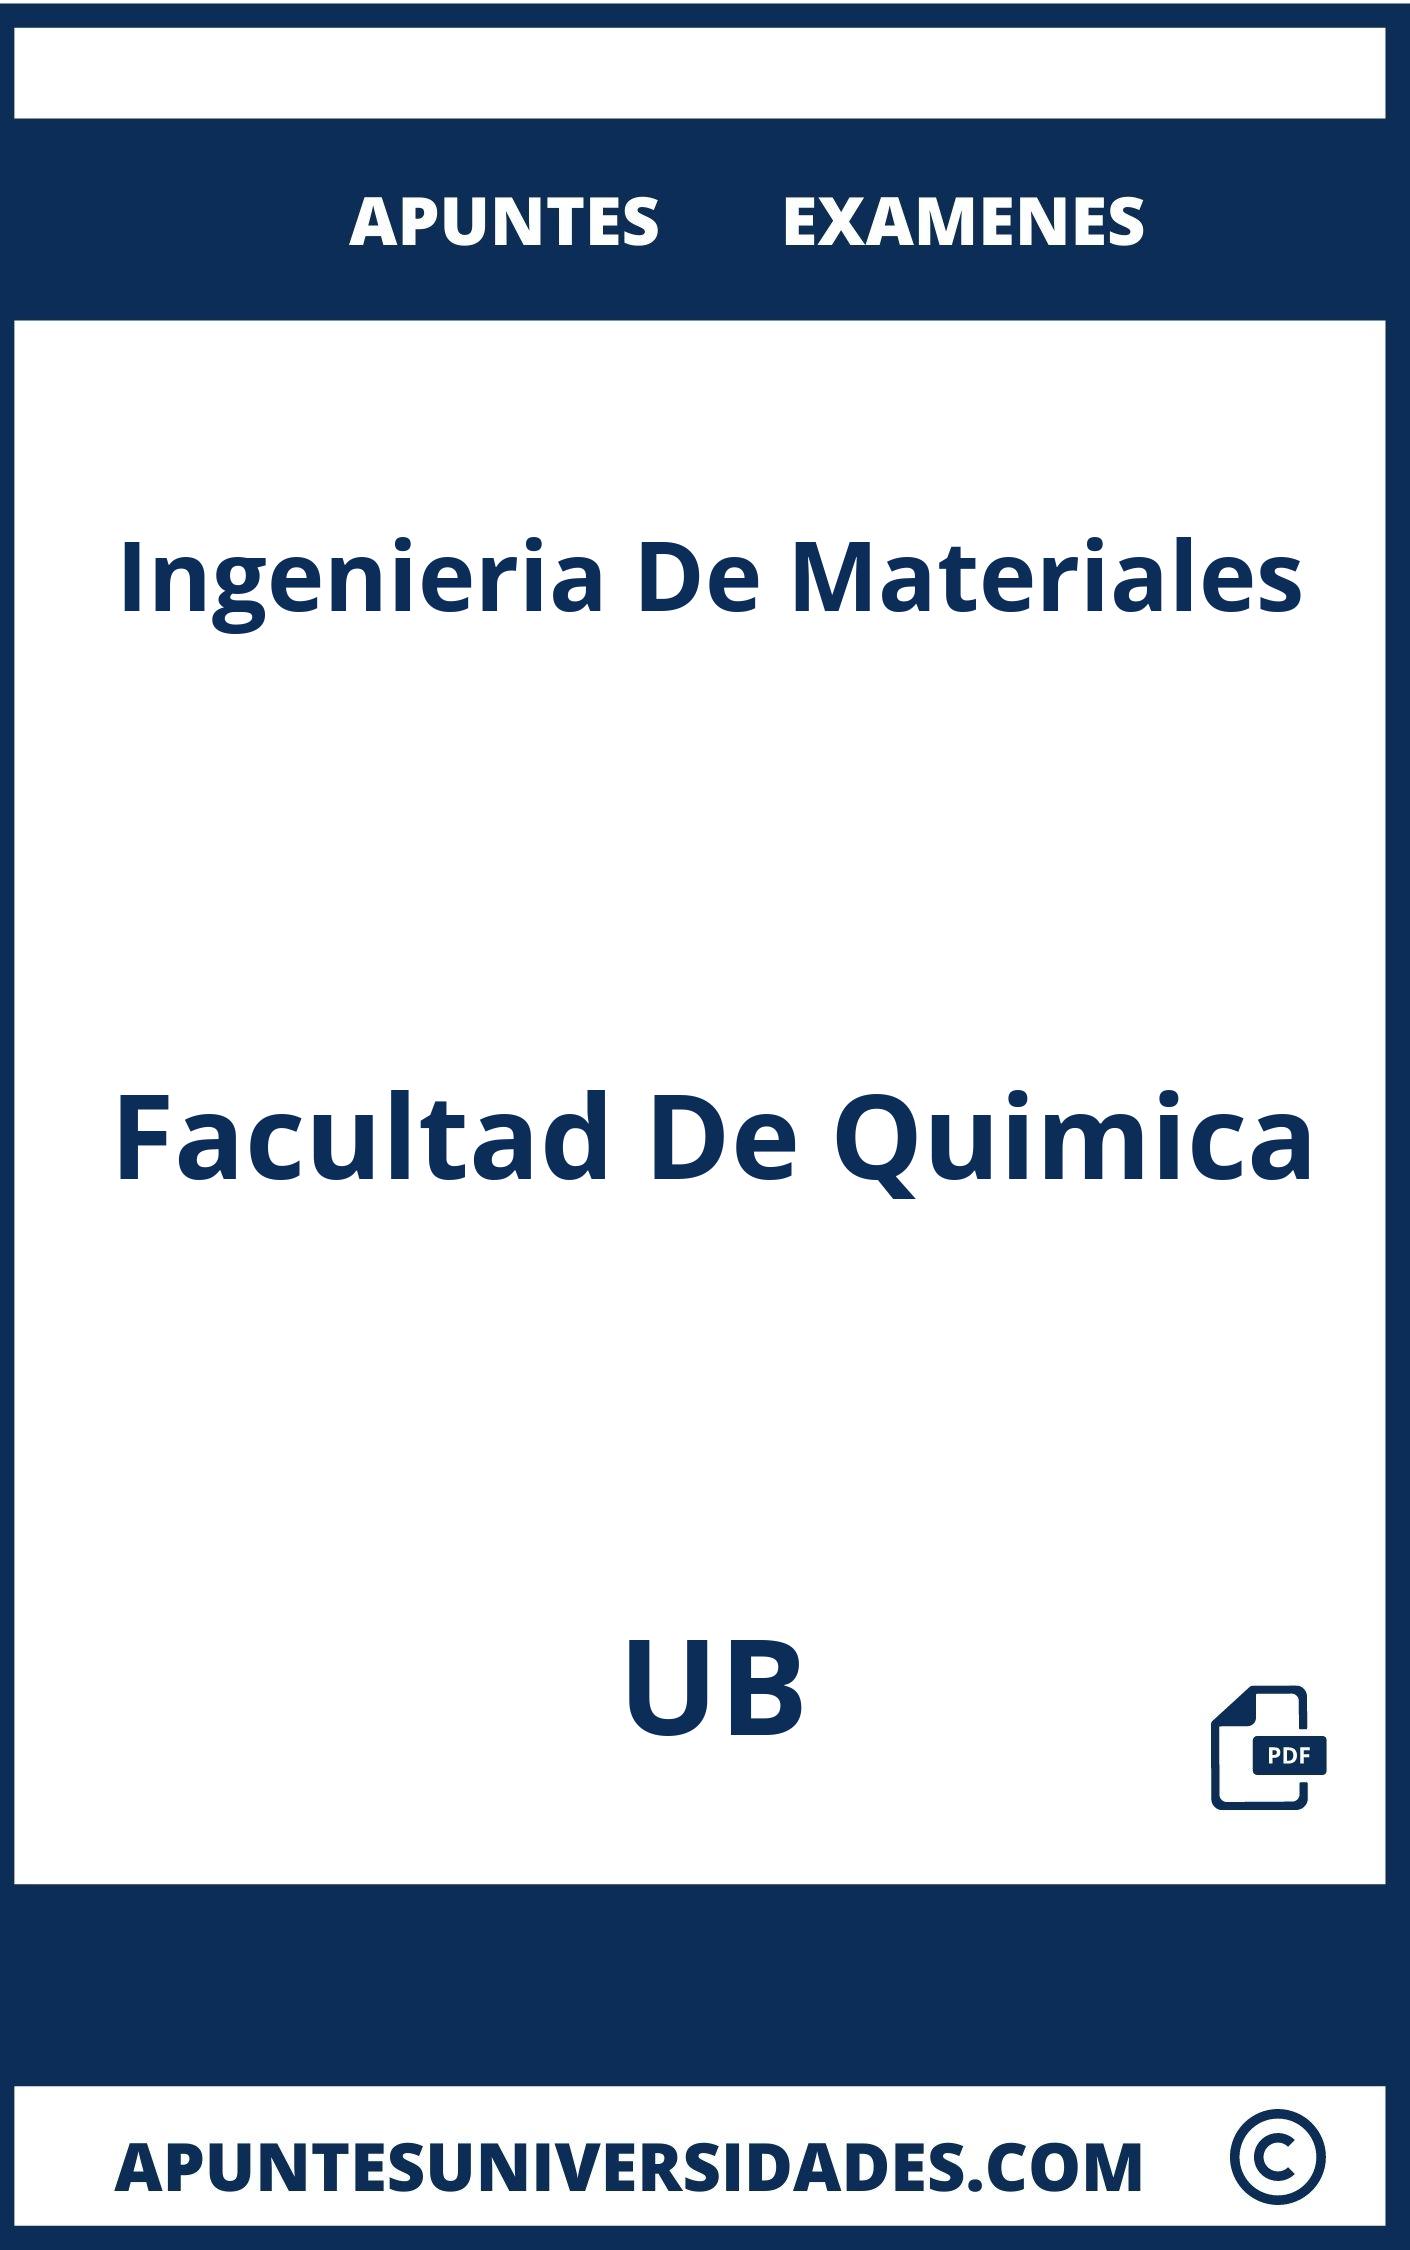 Apuntes Examenes Ingenieria De Materiales UB